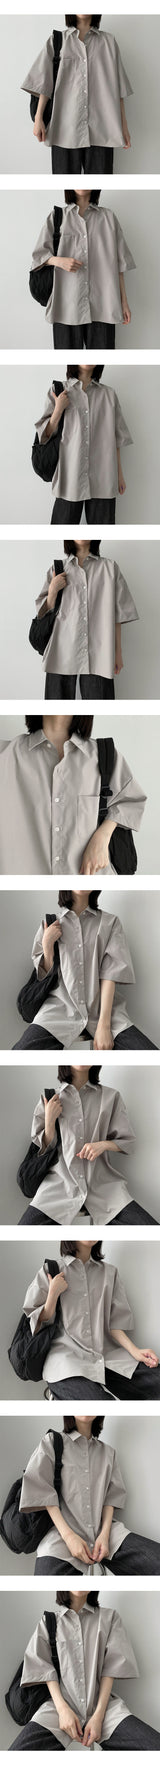 ダミングボクシーショートスリーブシャツ/Dumming boxy short-sleeved shirt Shirt